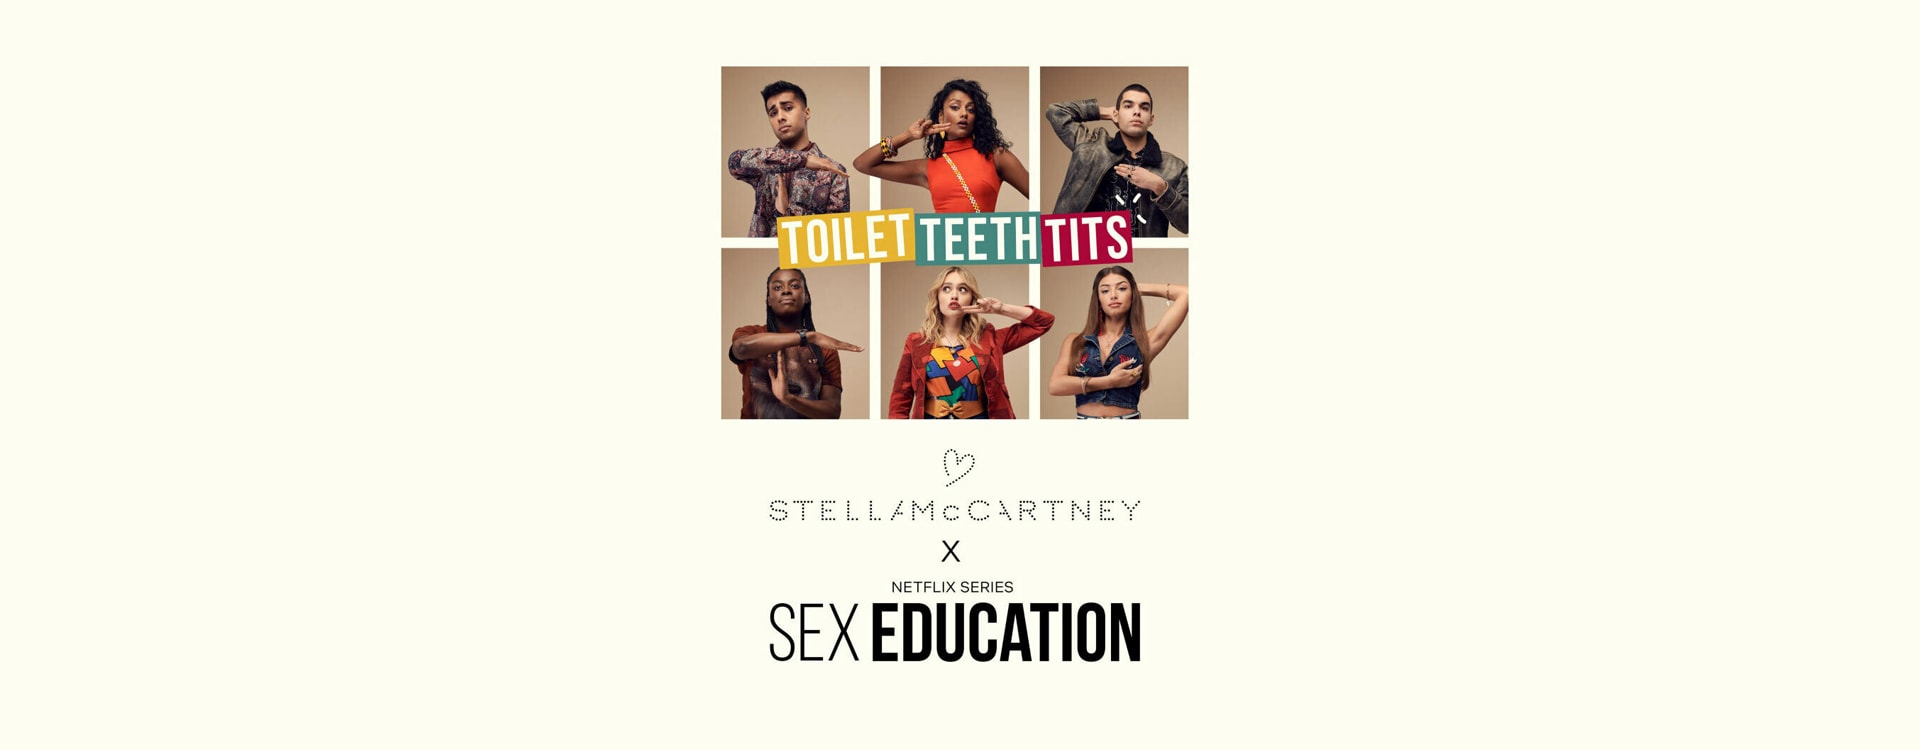 When Stella McCartney met Netflix's Sex Education | Deloitte UK